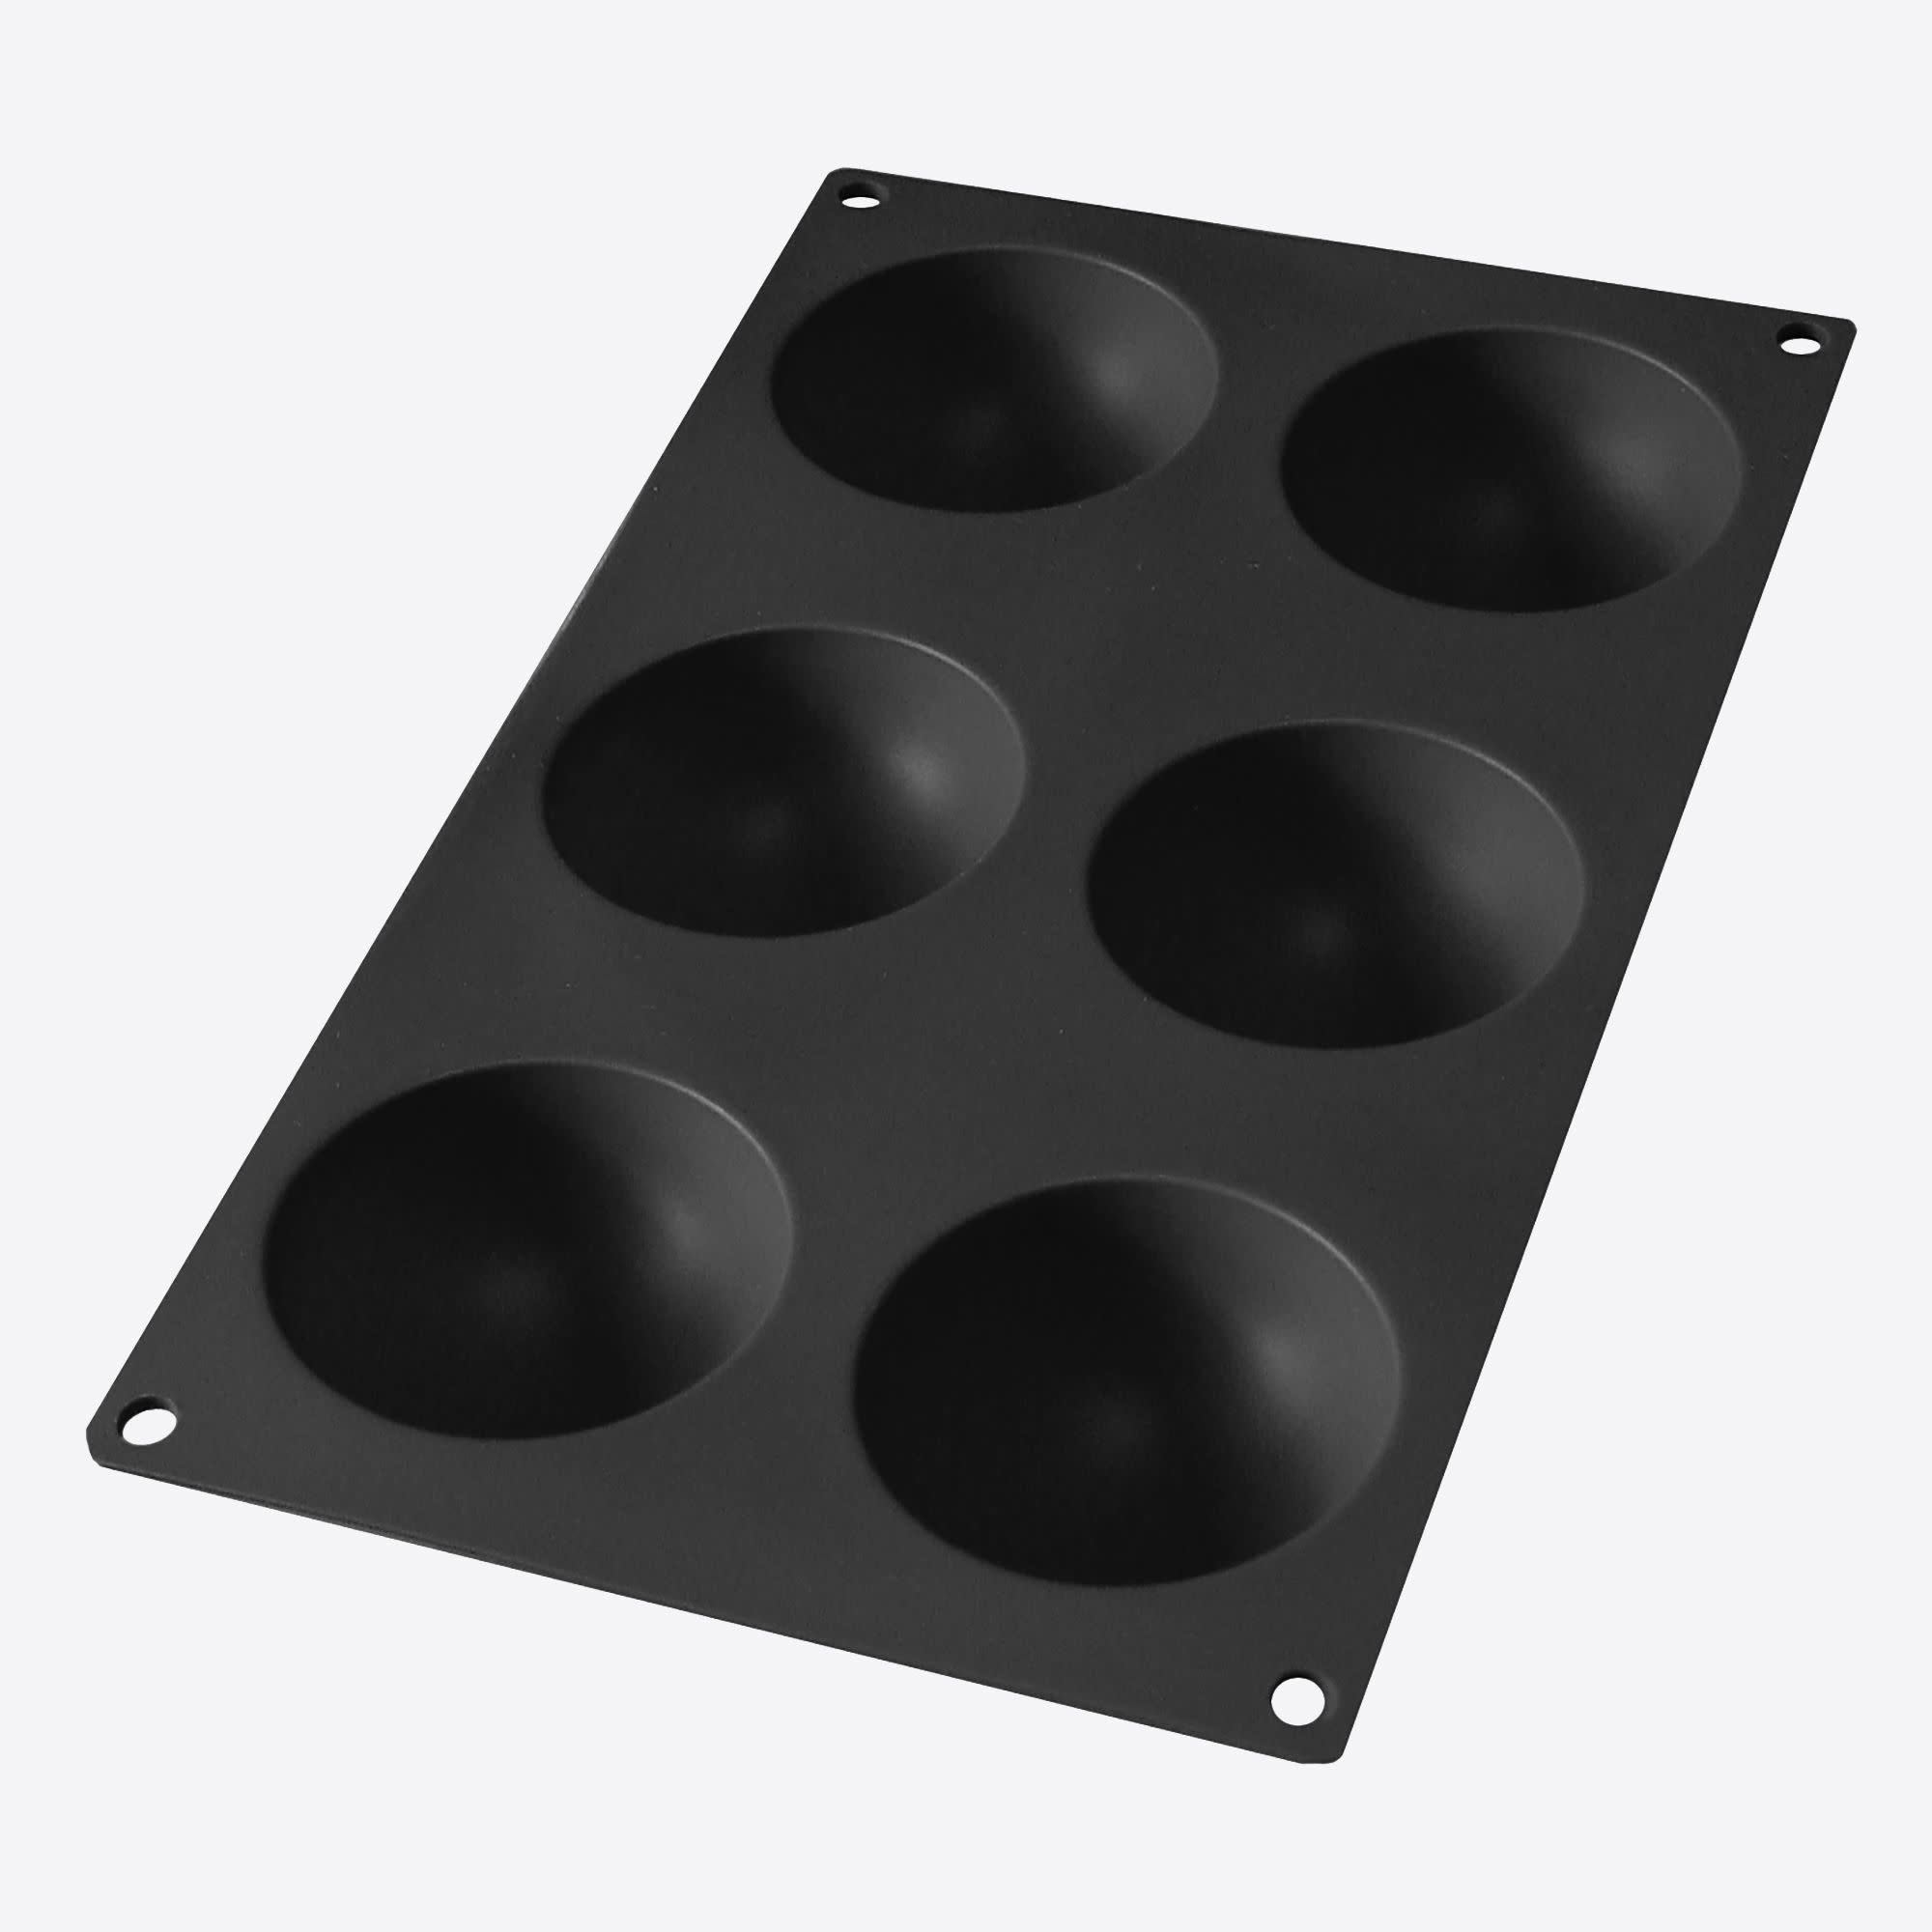 Dankbaar toelage leider Lékué bakvorm uit silicone voor 6 halve bollen zwart Ø 7cm H 3.2cm - Het  Kookeiland